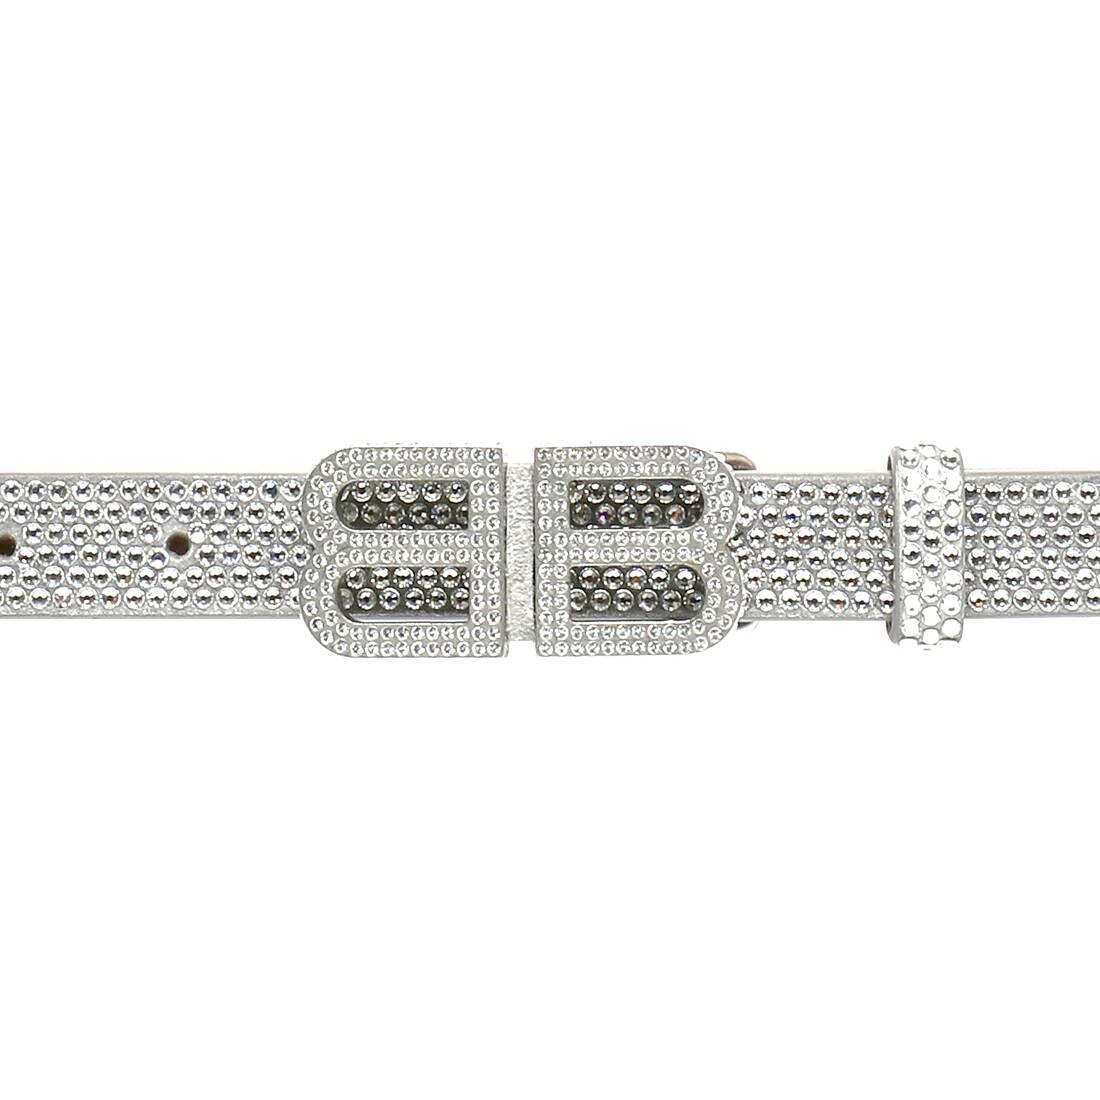 Women's Bb Hourglass Thin Belt With Rhinestones in Grey - 5